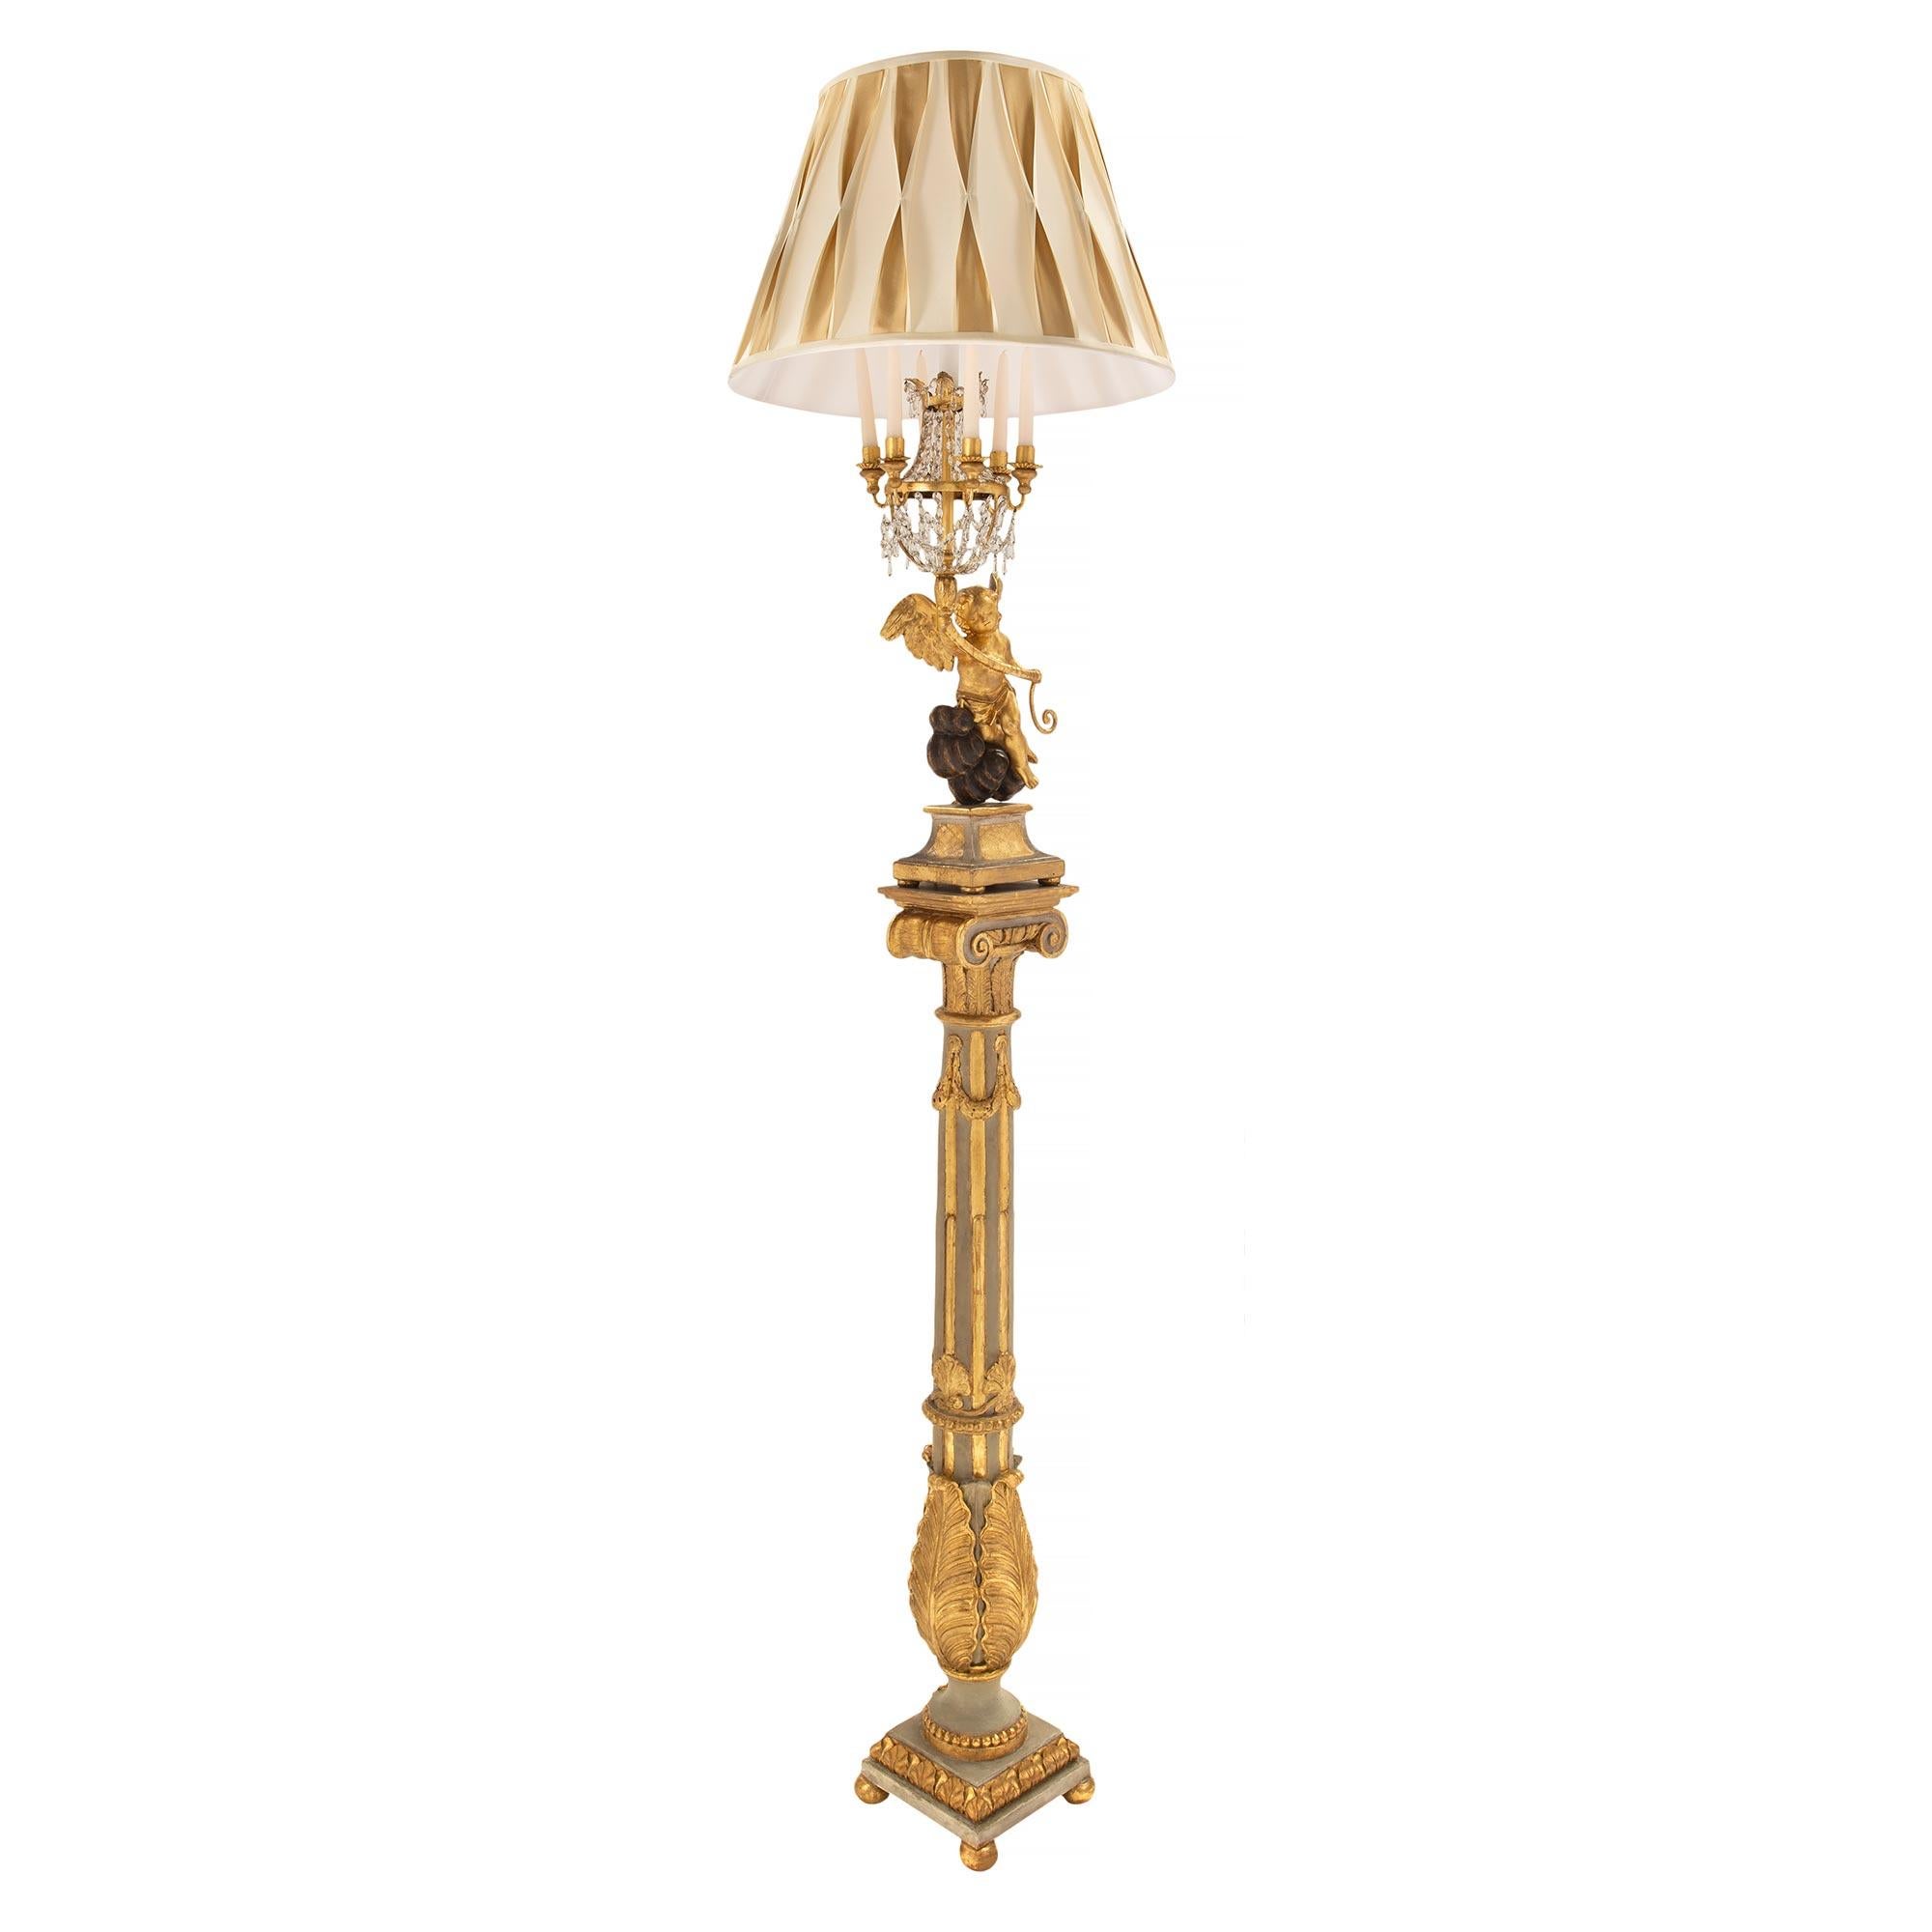 Une superbe paire de lampadaires italiens de style Louis XVI du début du XIXe siècle, patinés, en bois doré et polychromes noirs. Chaque lampadaire est surélevé par une base carrée avec de fins pieds en forme de boule et une bande enveloppante